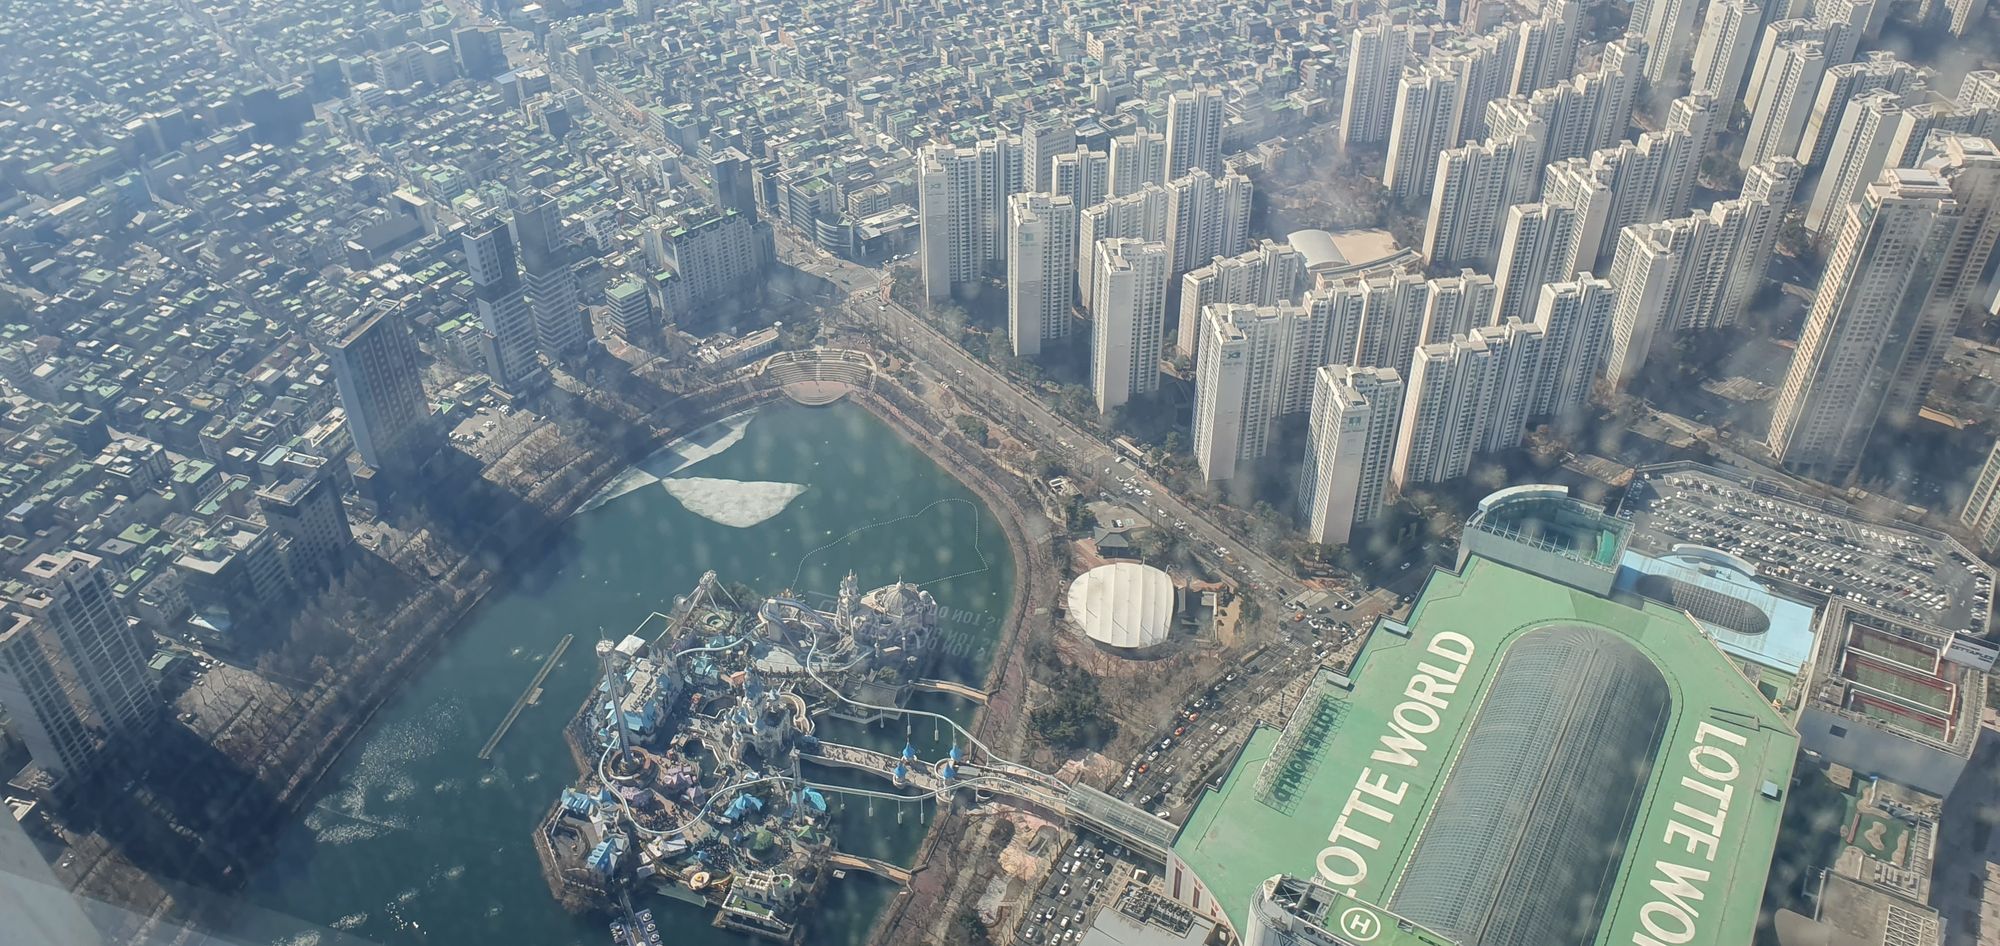 Lotte Tower - Vendo Seul quase do Céu